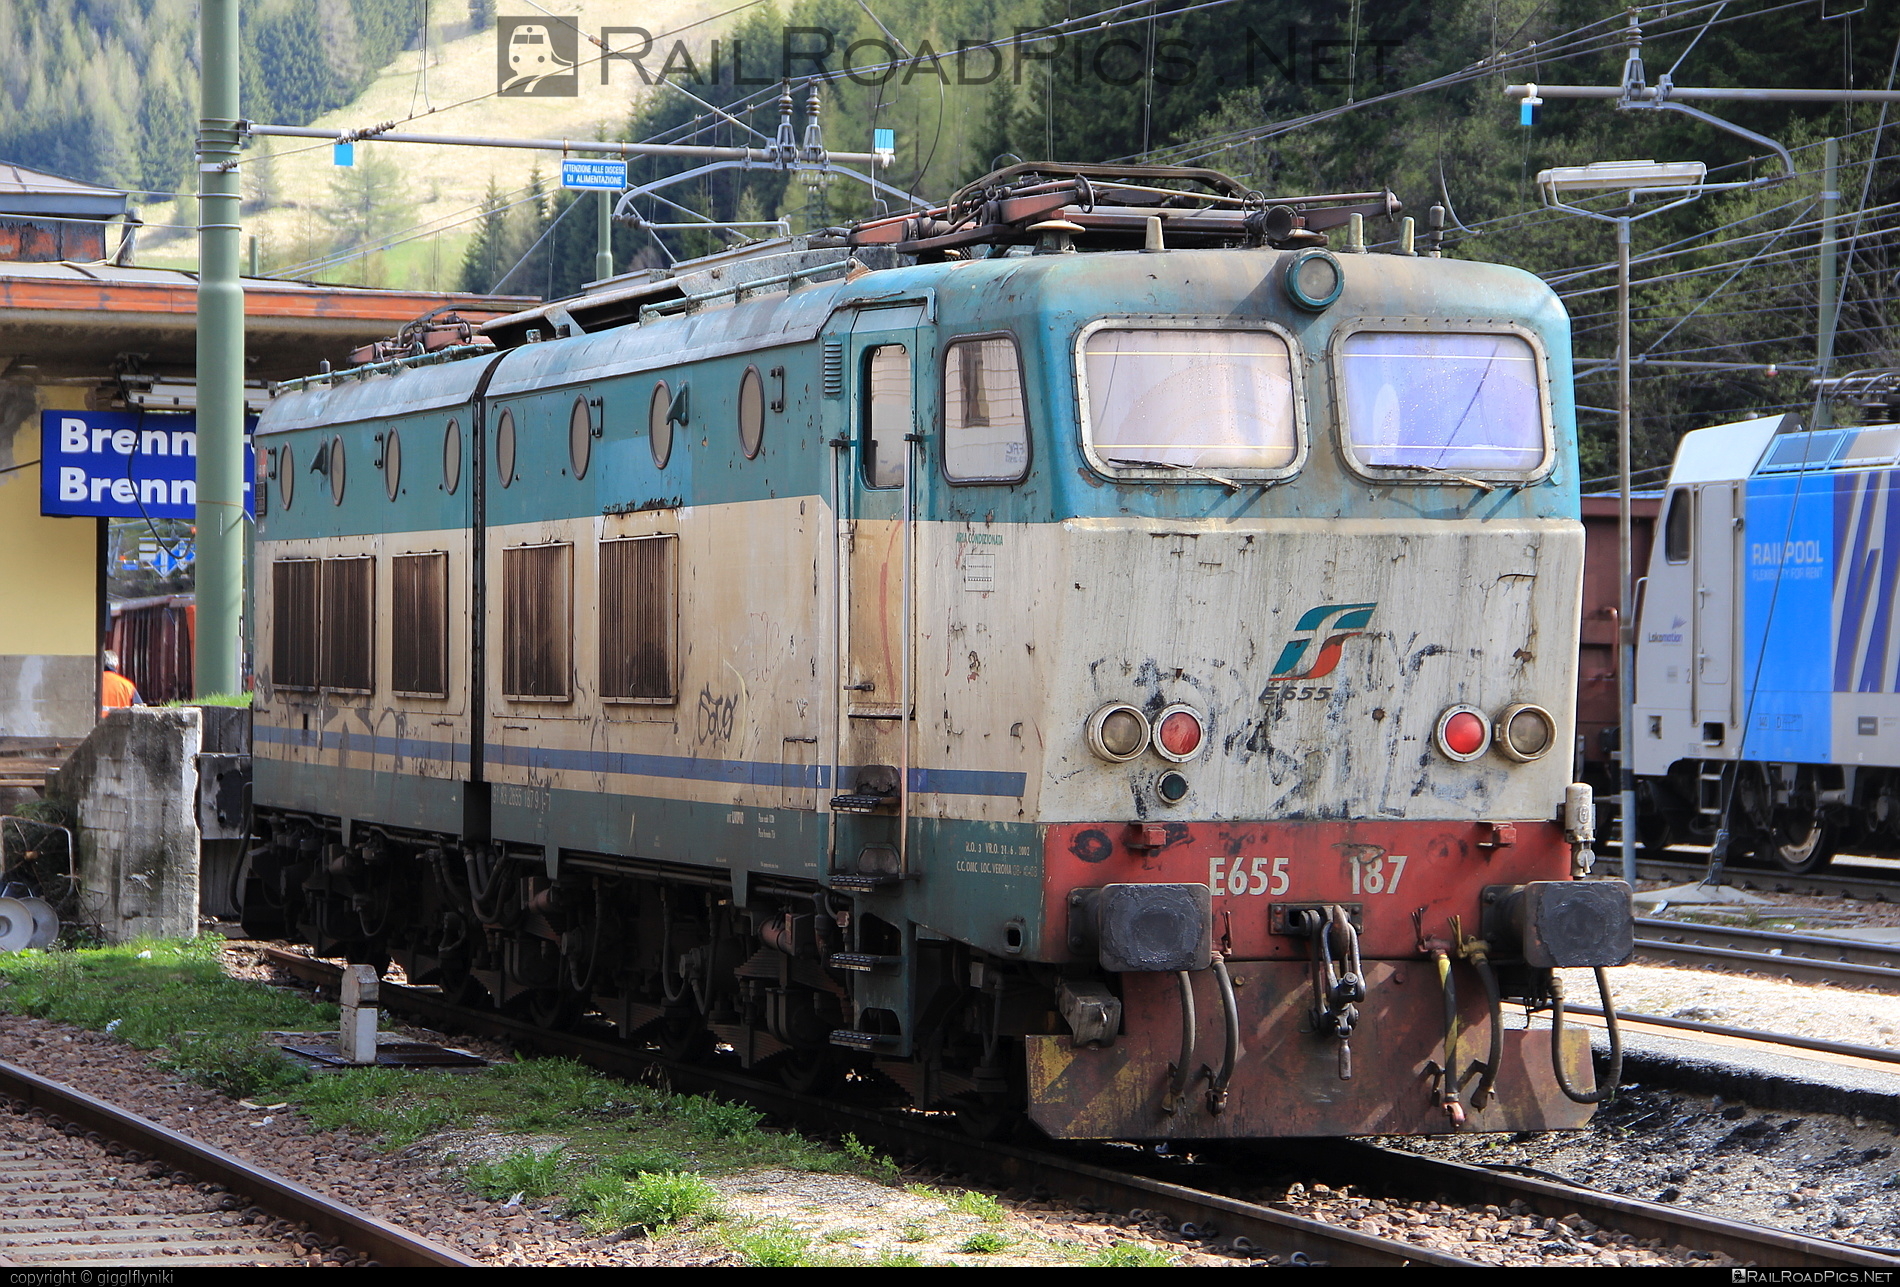 FS Class E.655 - E655 187 operated by Mercitalia Rail S.r.l. #caimano #classE655 #e655locomotive #ferroviedellostato #fs #fsClassE655 #fsitaliane #mercitalia #trenitalia #trenitaliaspa